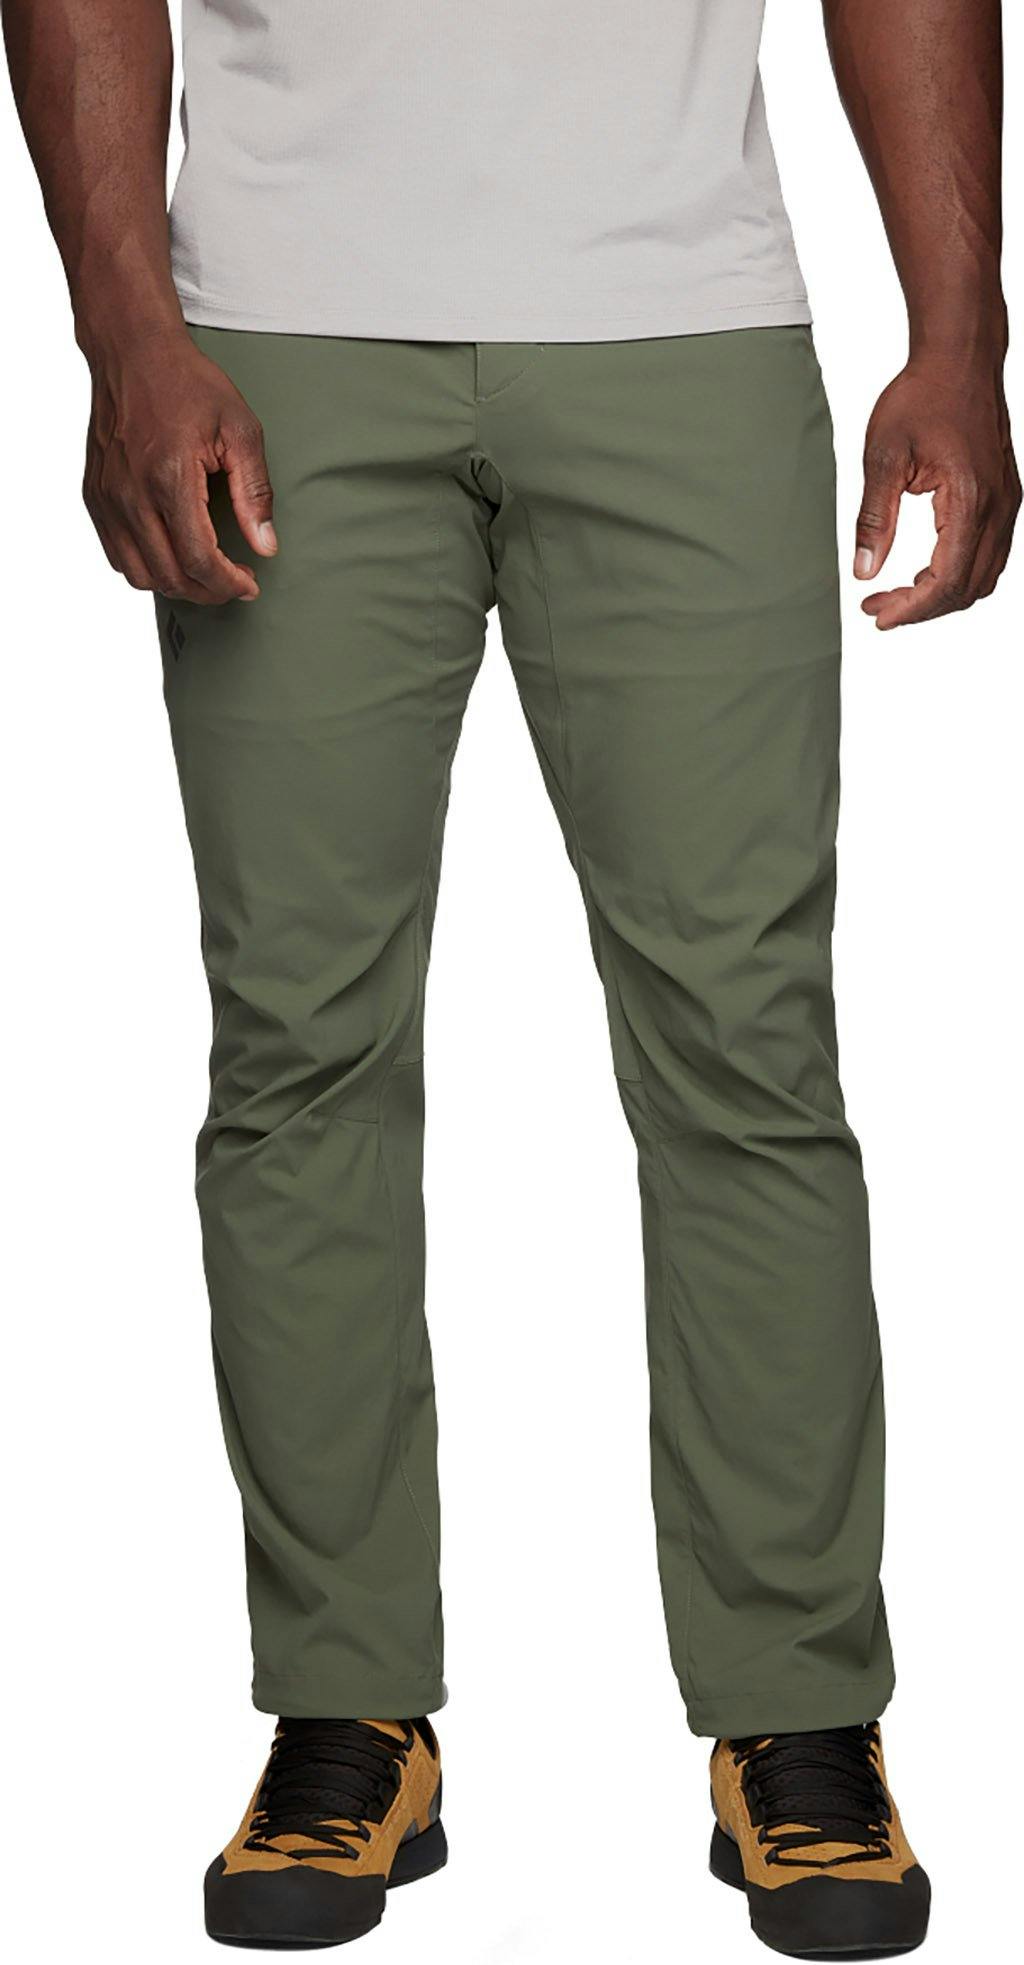 Product image for Technician Alpine Pants - Men's